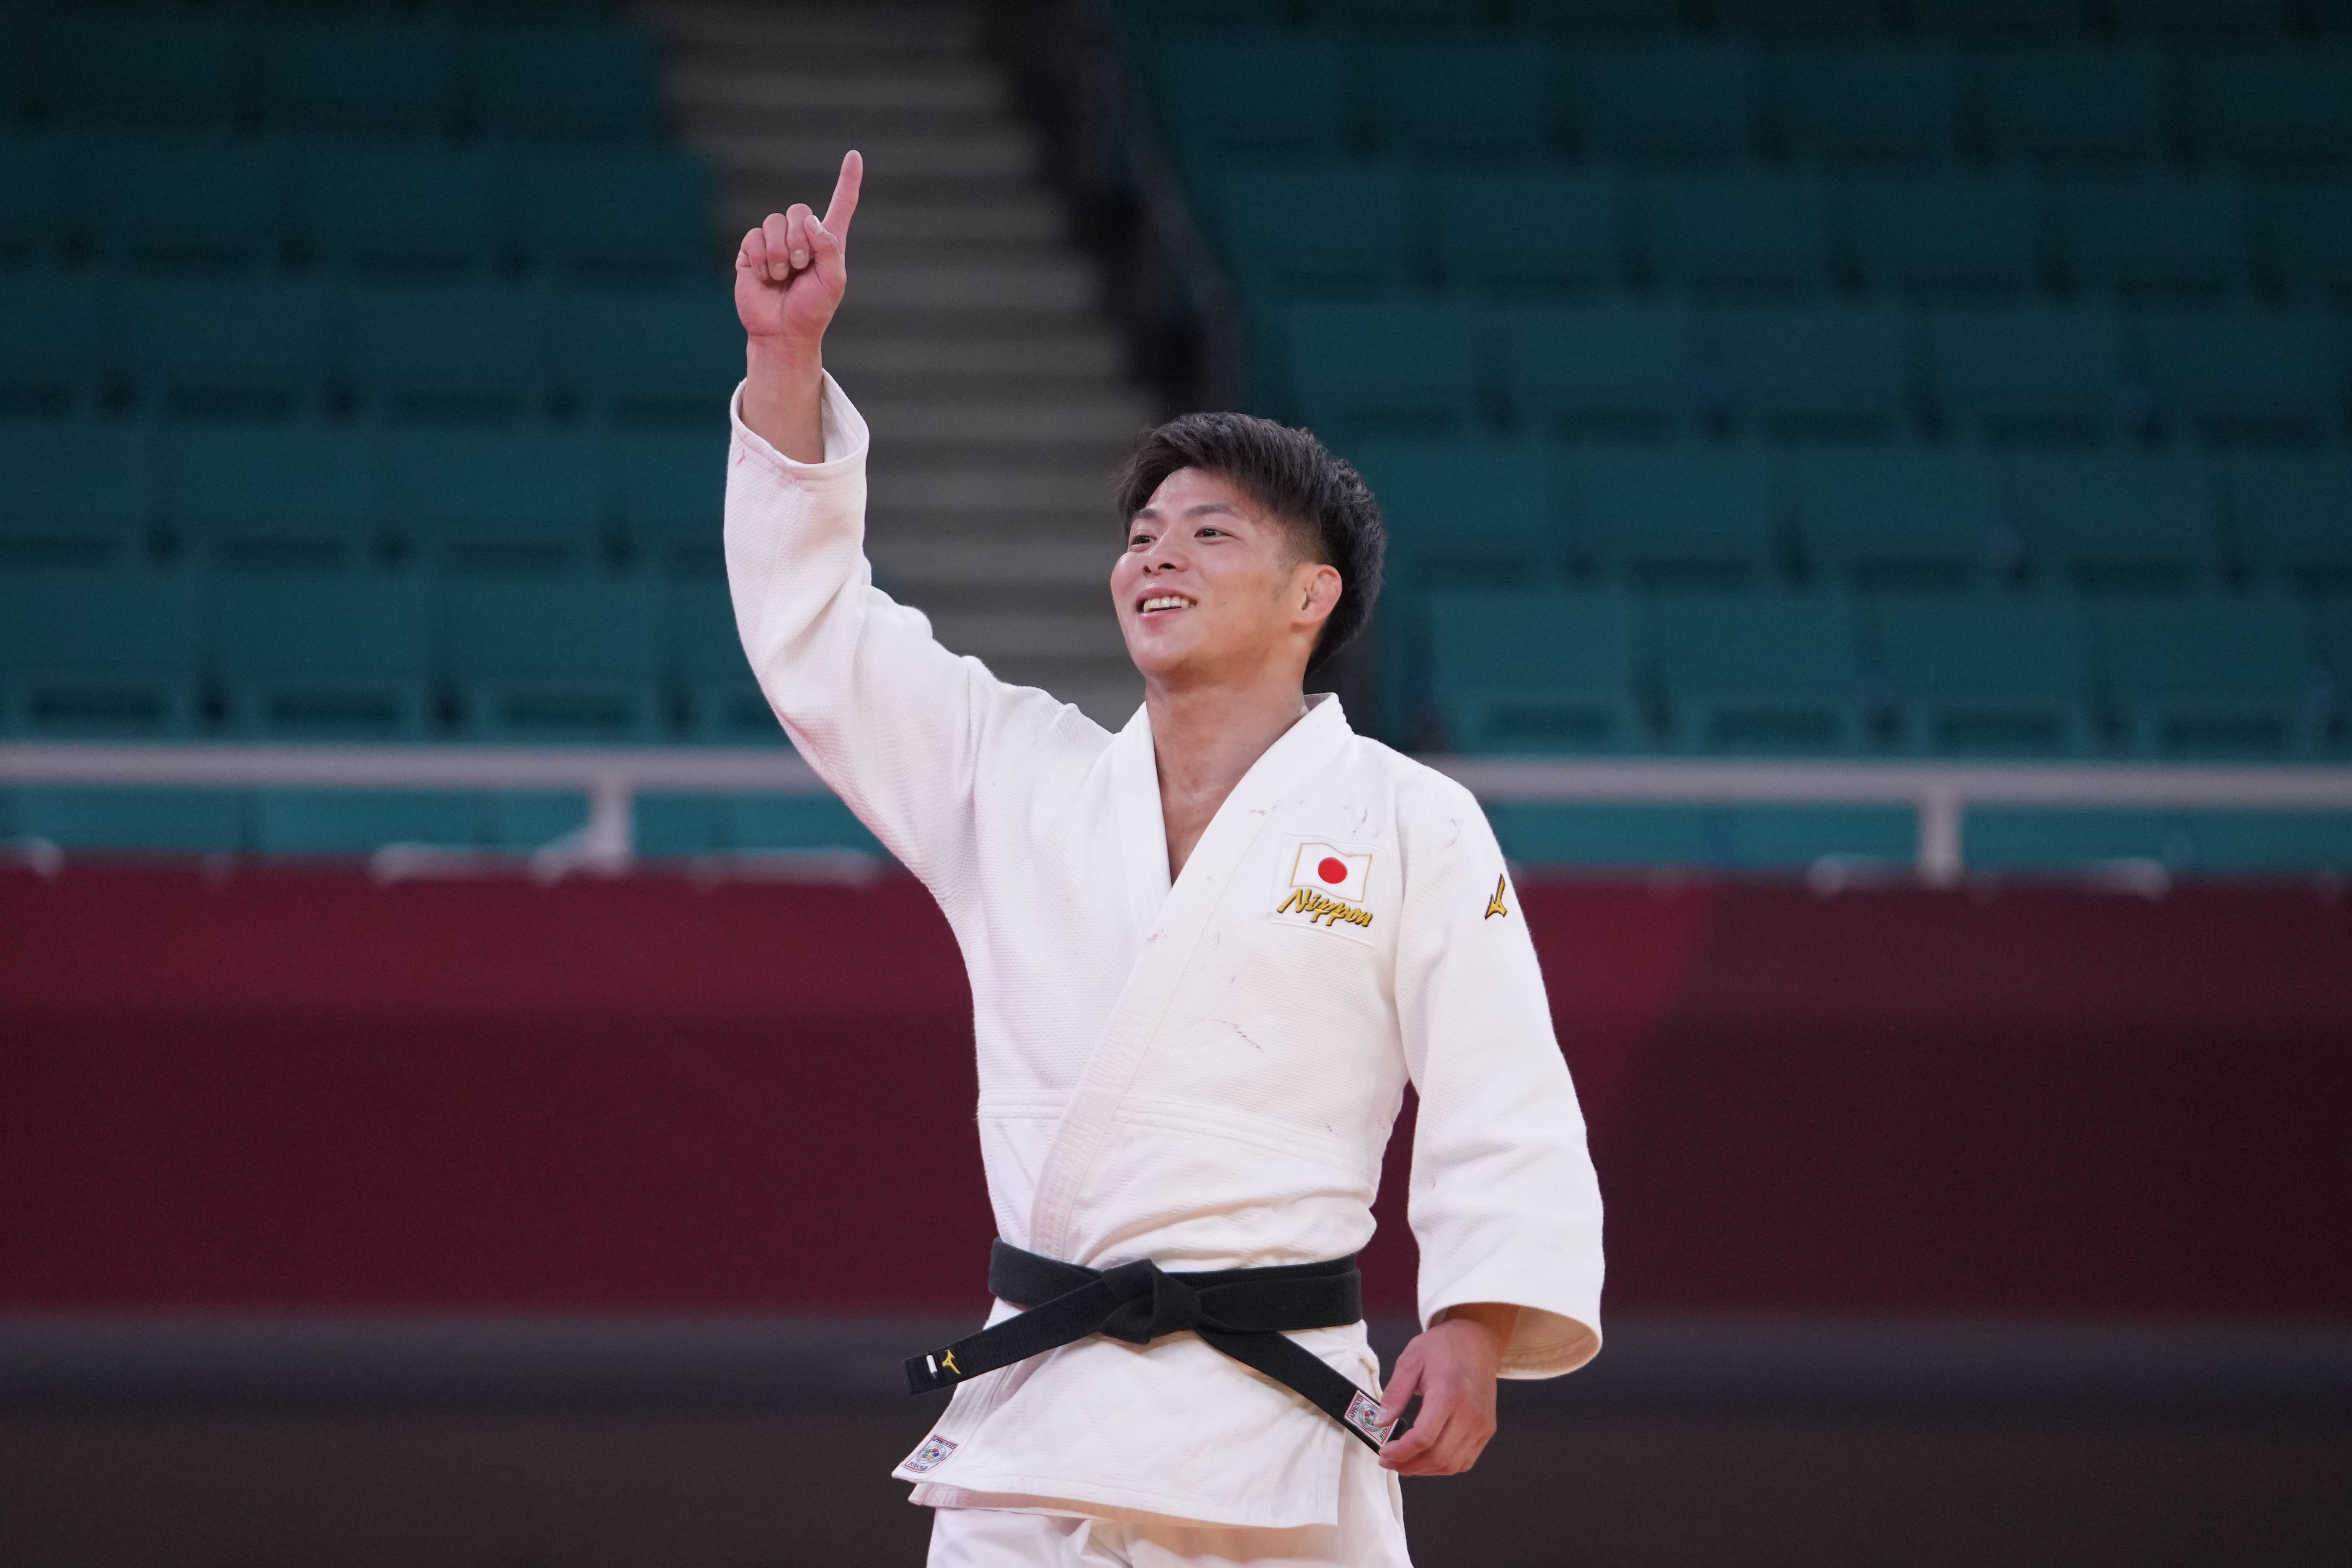 柔道——日本选手阿部一二三夺得男子66公斤级冠军